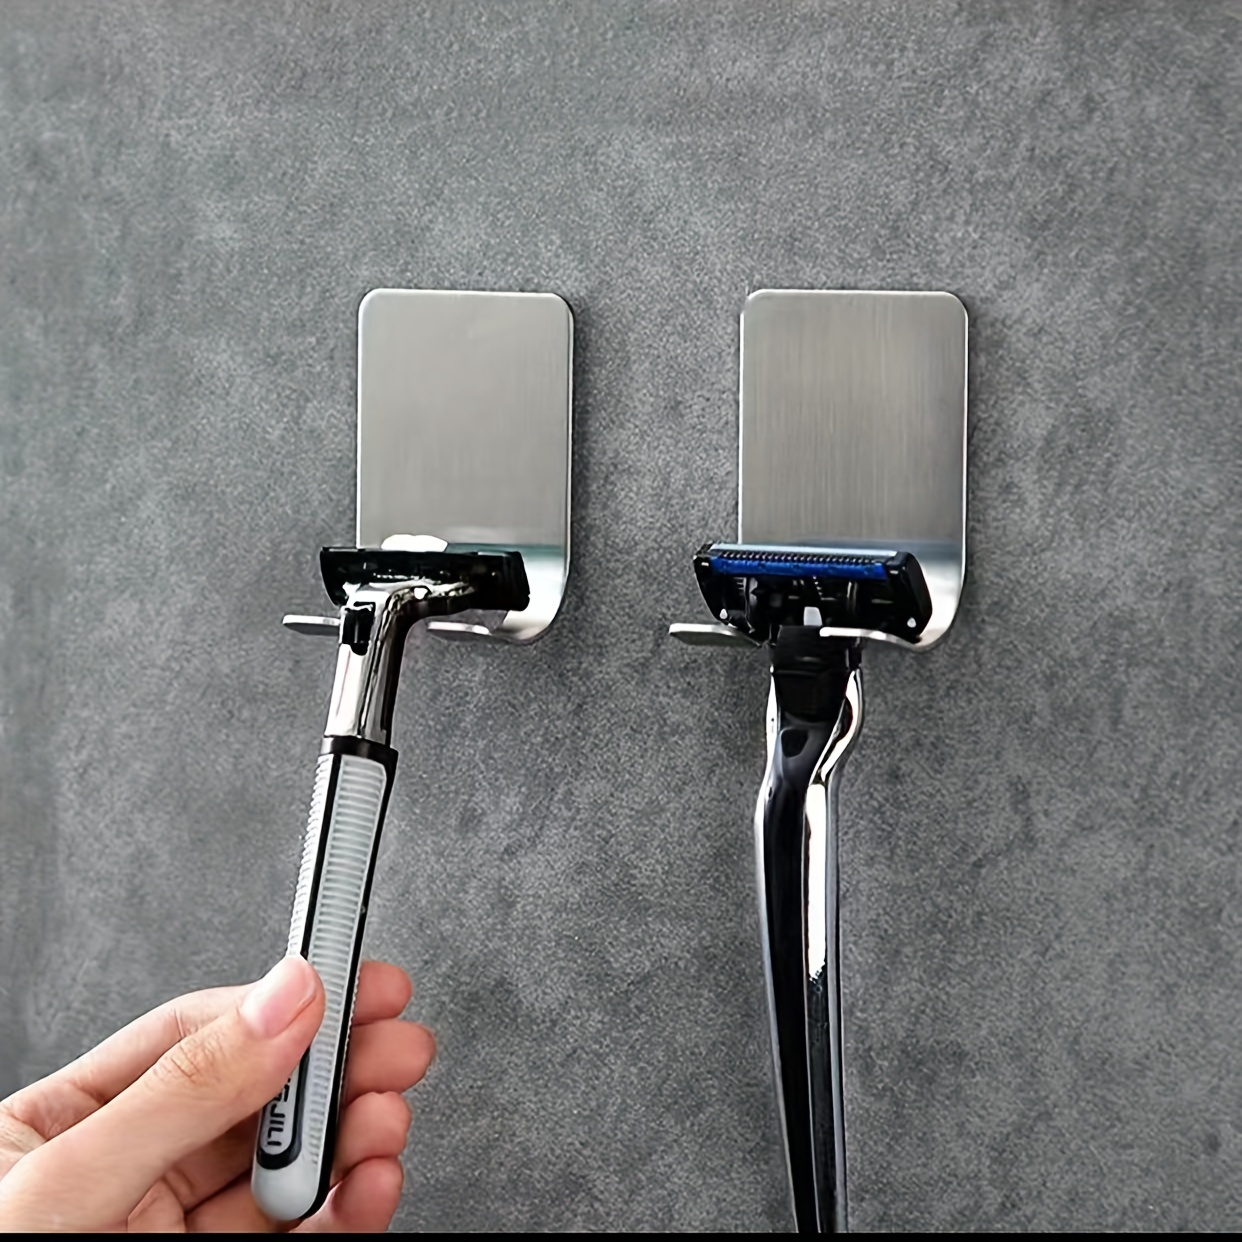 Razor Holder for Shower, Stainless Steel Self Adhesive Shower Hooks, Heavy Duty Razor Holder Hook Shaver Hook Hanger for Bathroom Kitchen Organizer